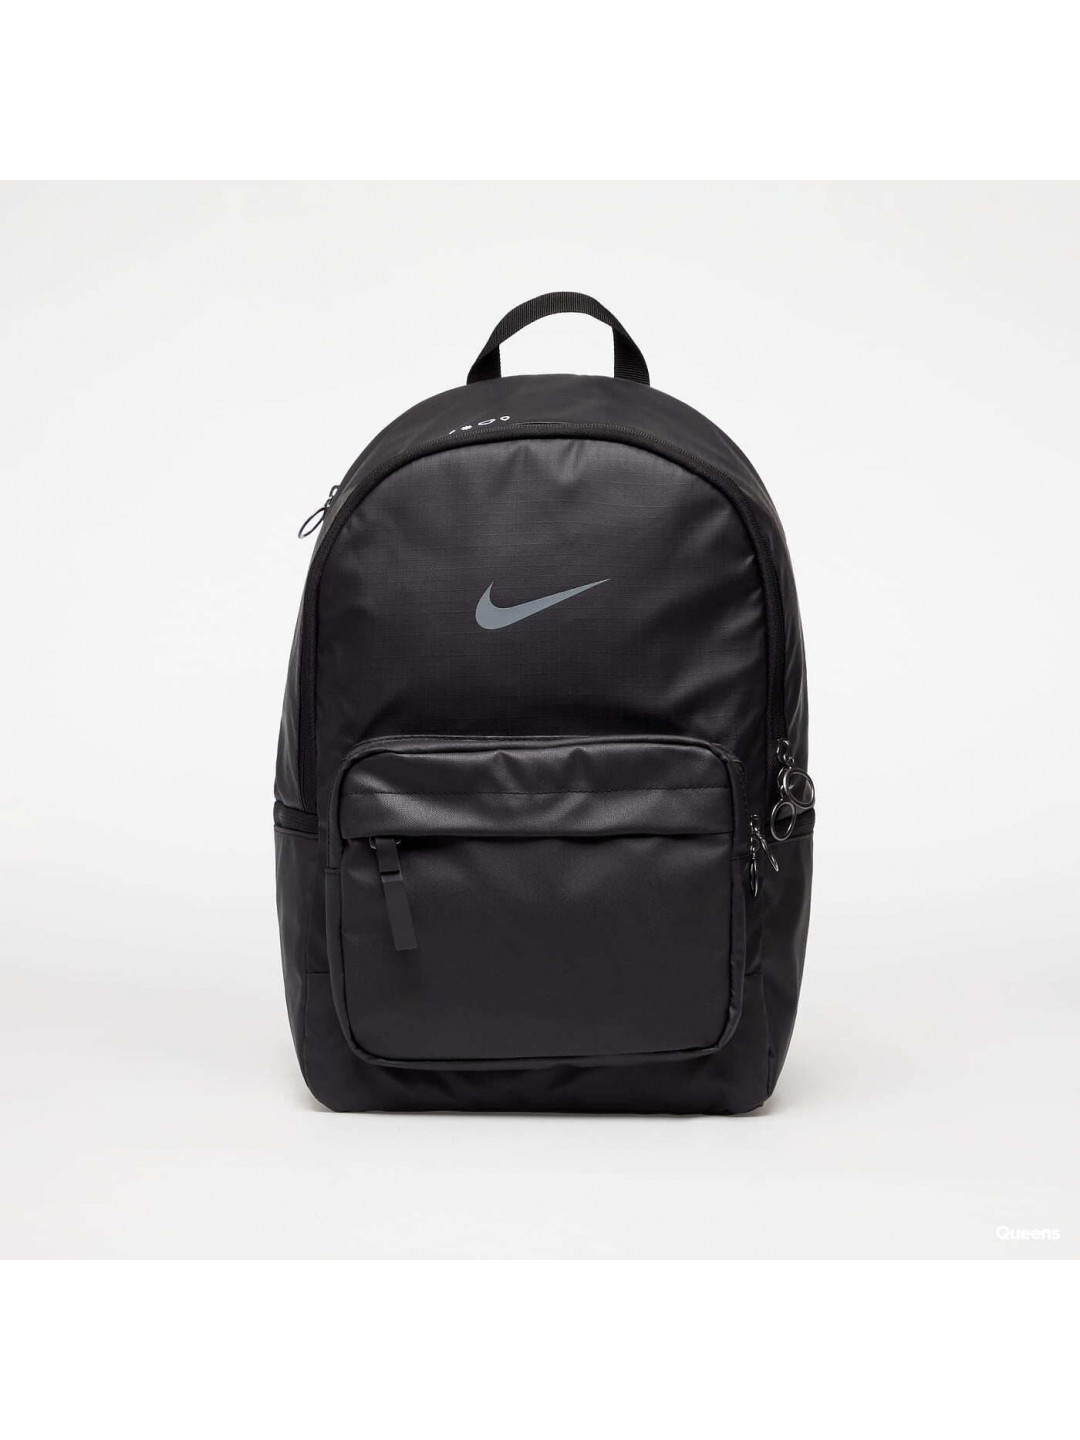 Nike Heritage Winterized Eugene Backpack Black Black Smoke Grey